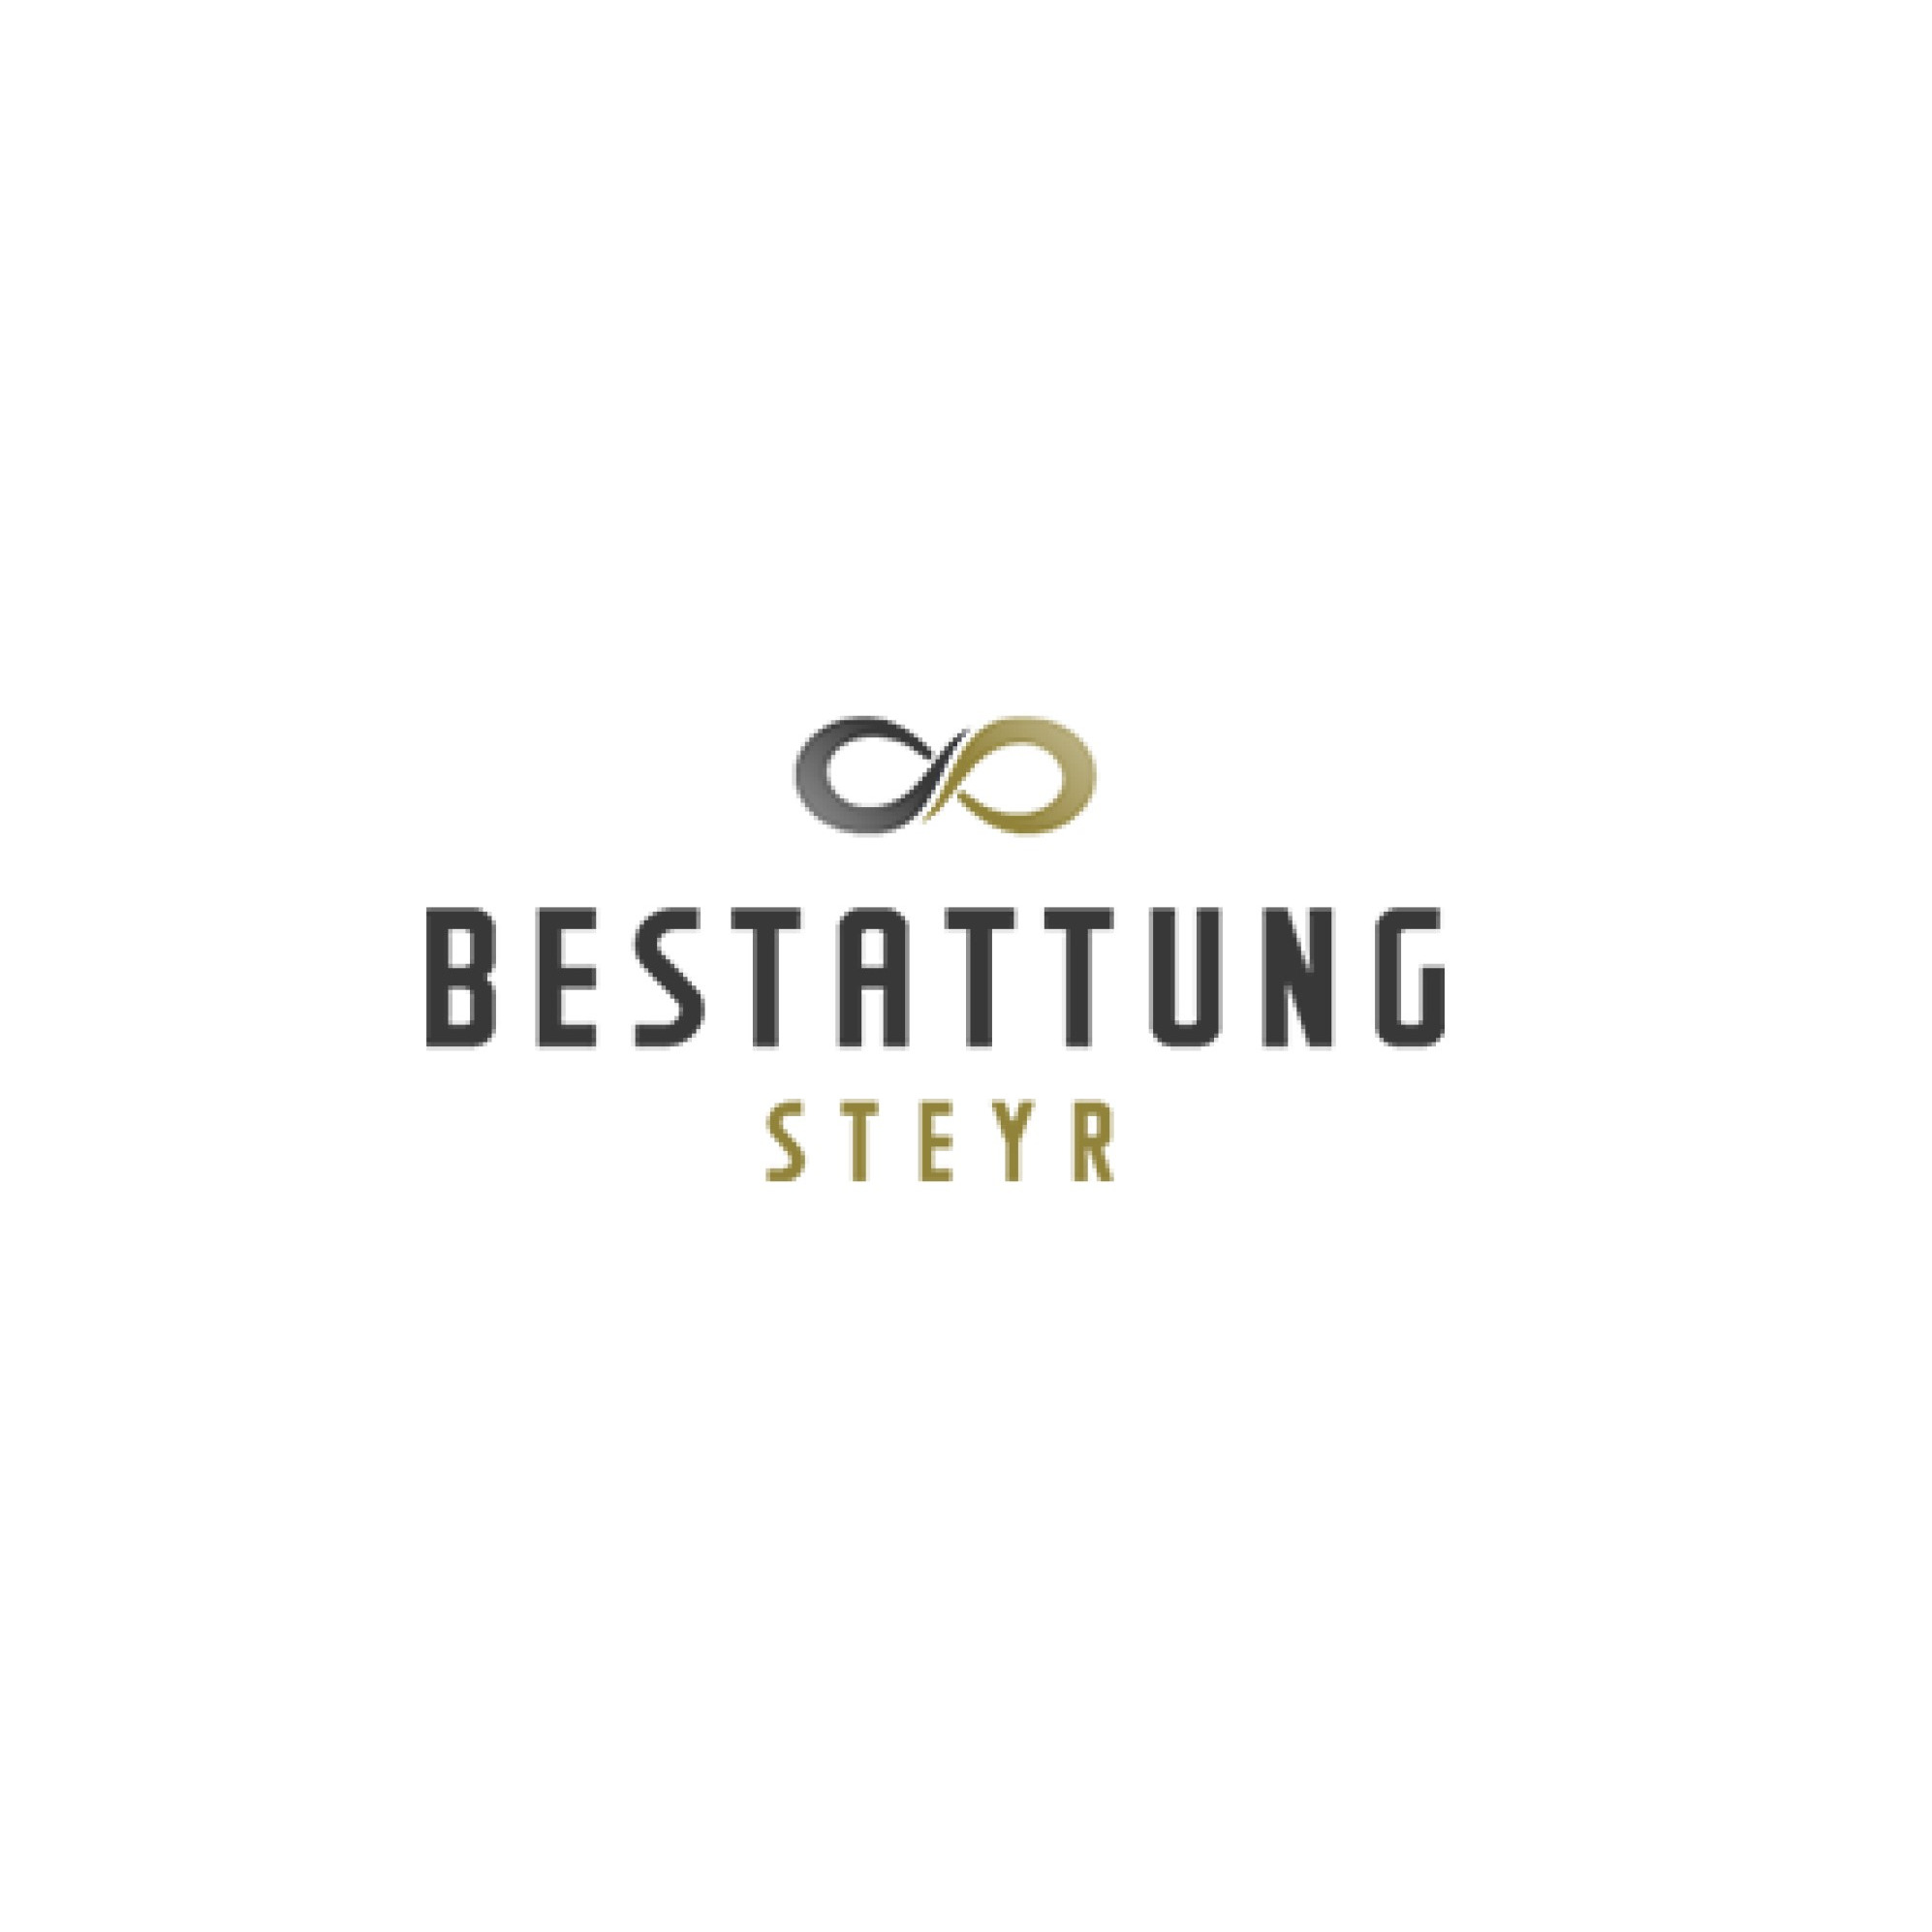 Bestattung Steyr - LOGO